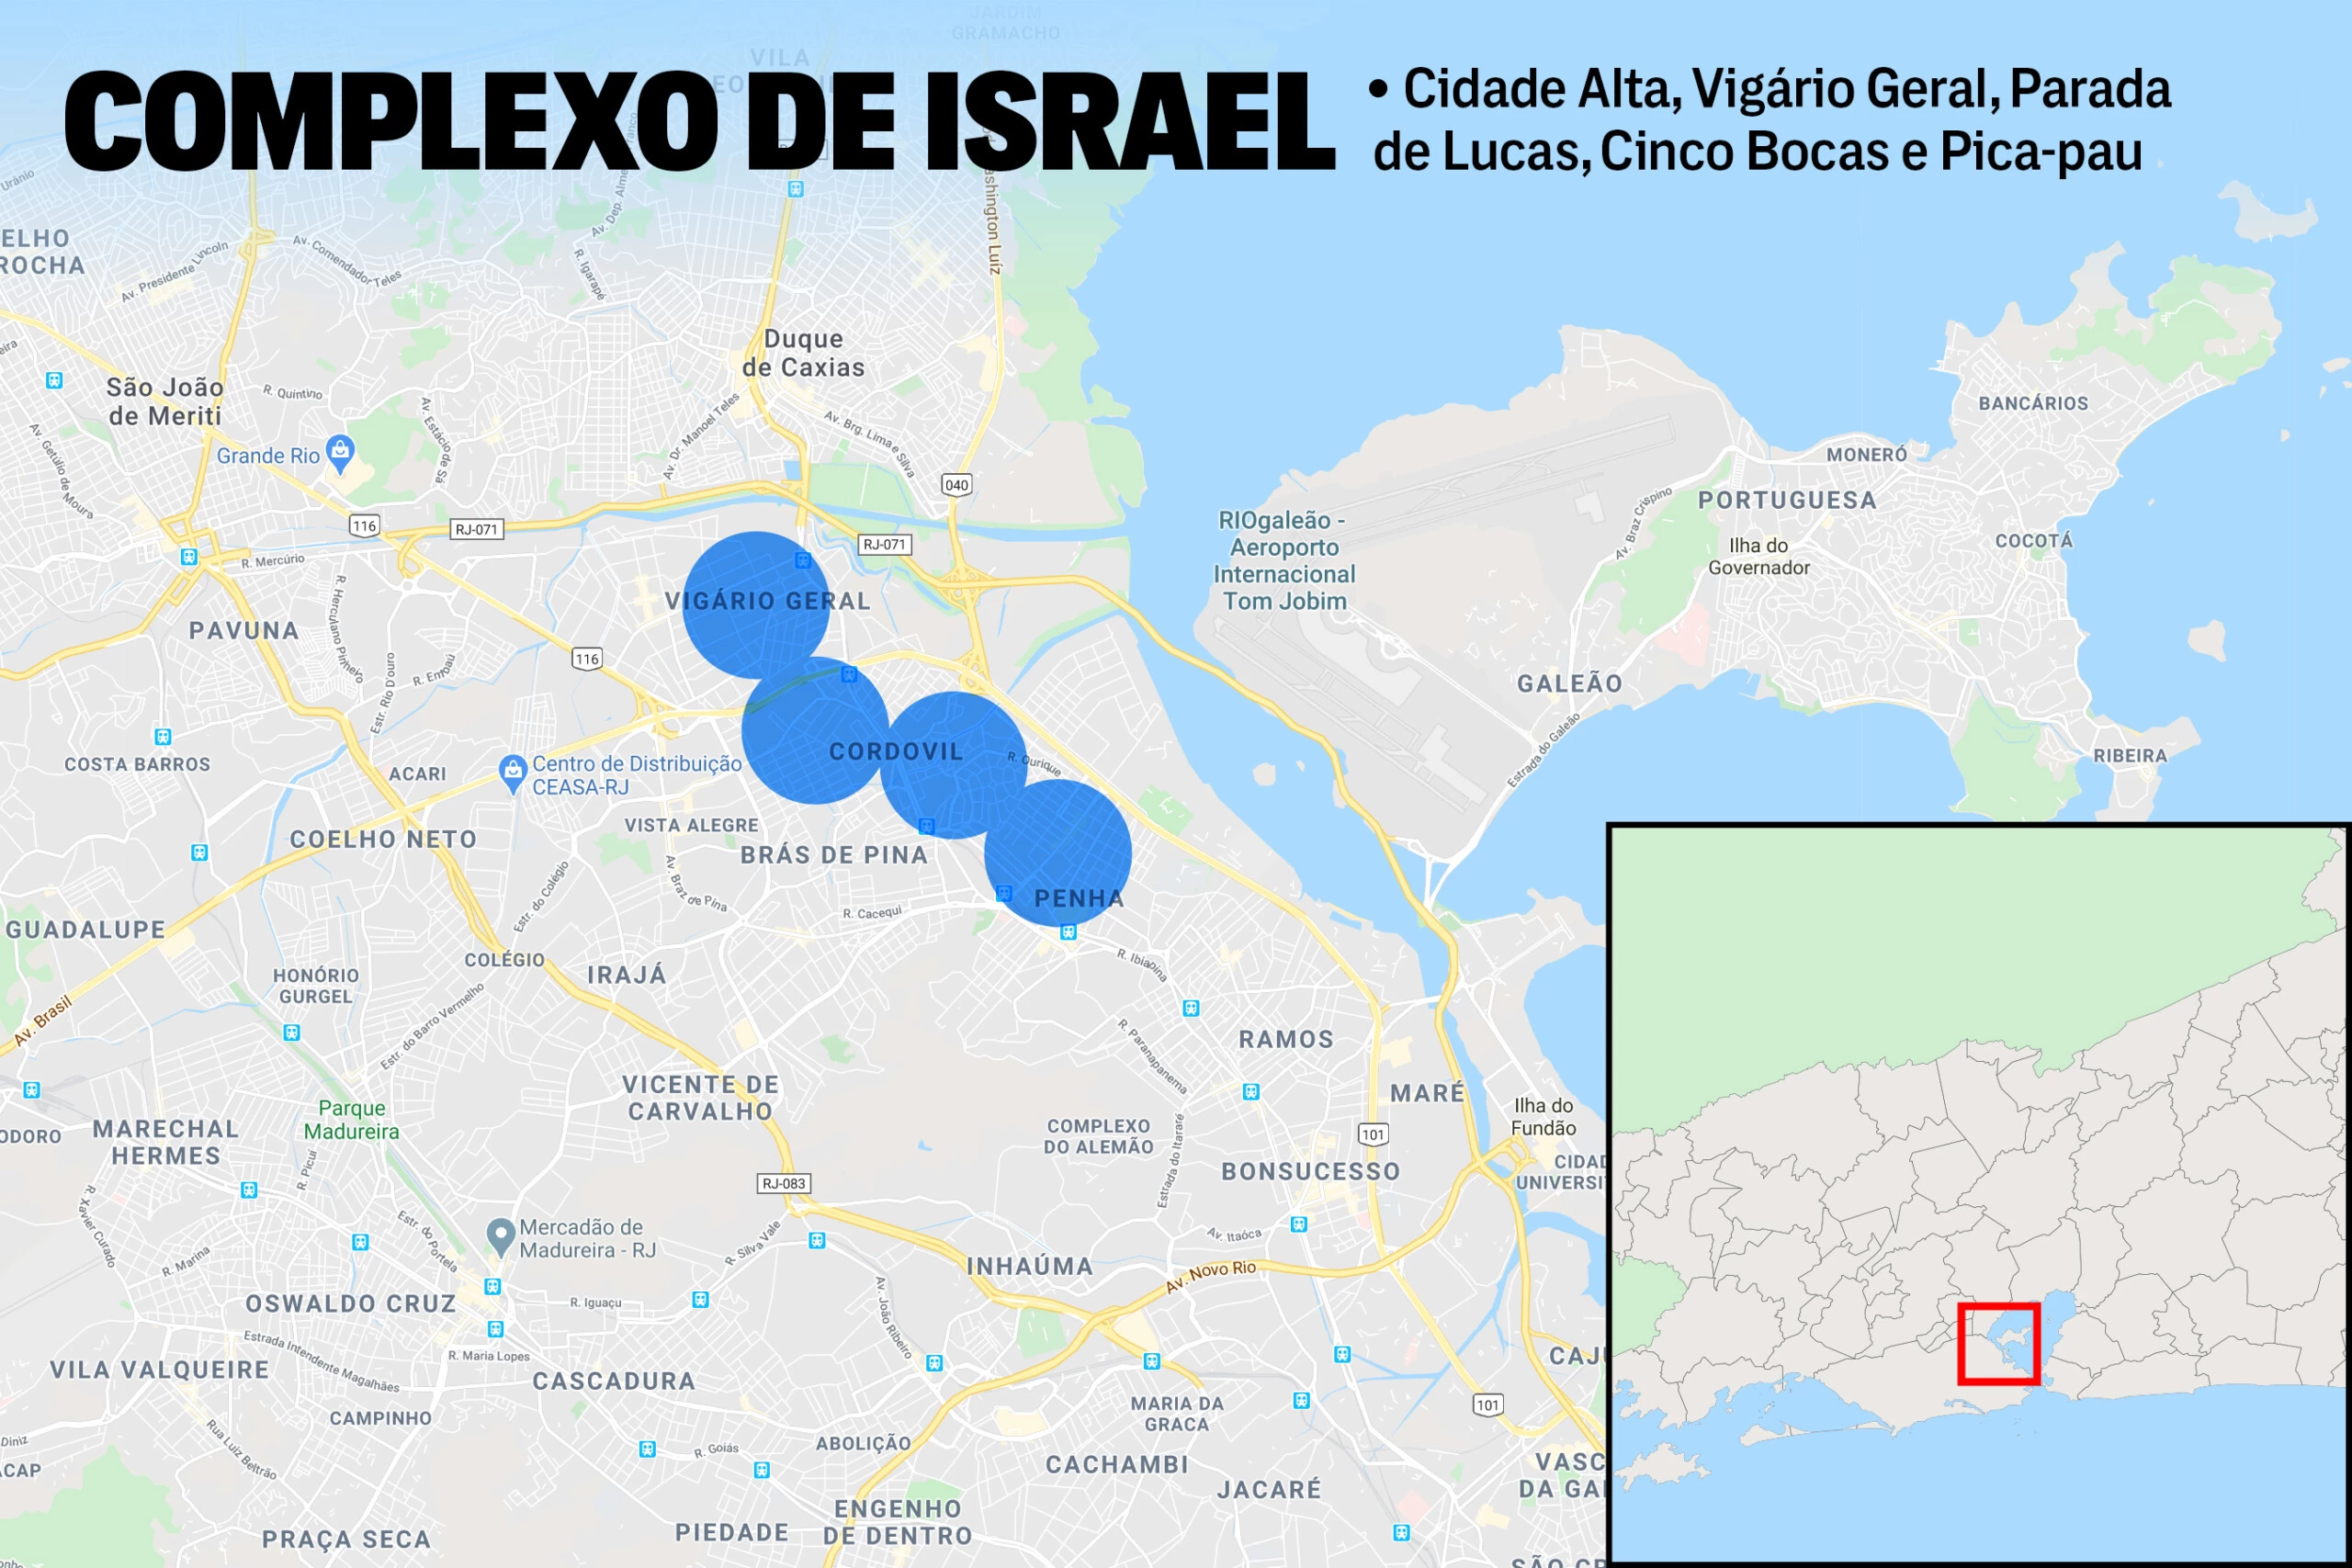 Cidade Alta, Vigário Geral, Parada de Lucas, Cinco Bocas e Pica-pau: As cinco comunidades que, juntas, formam a região conhecida como Complexo de Israel.